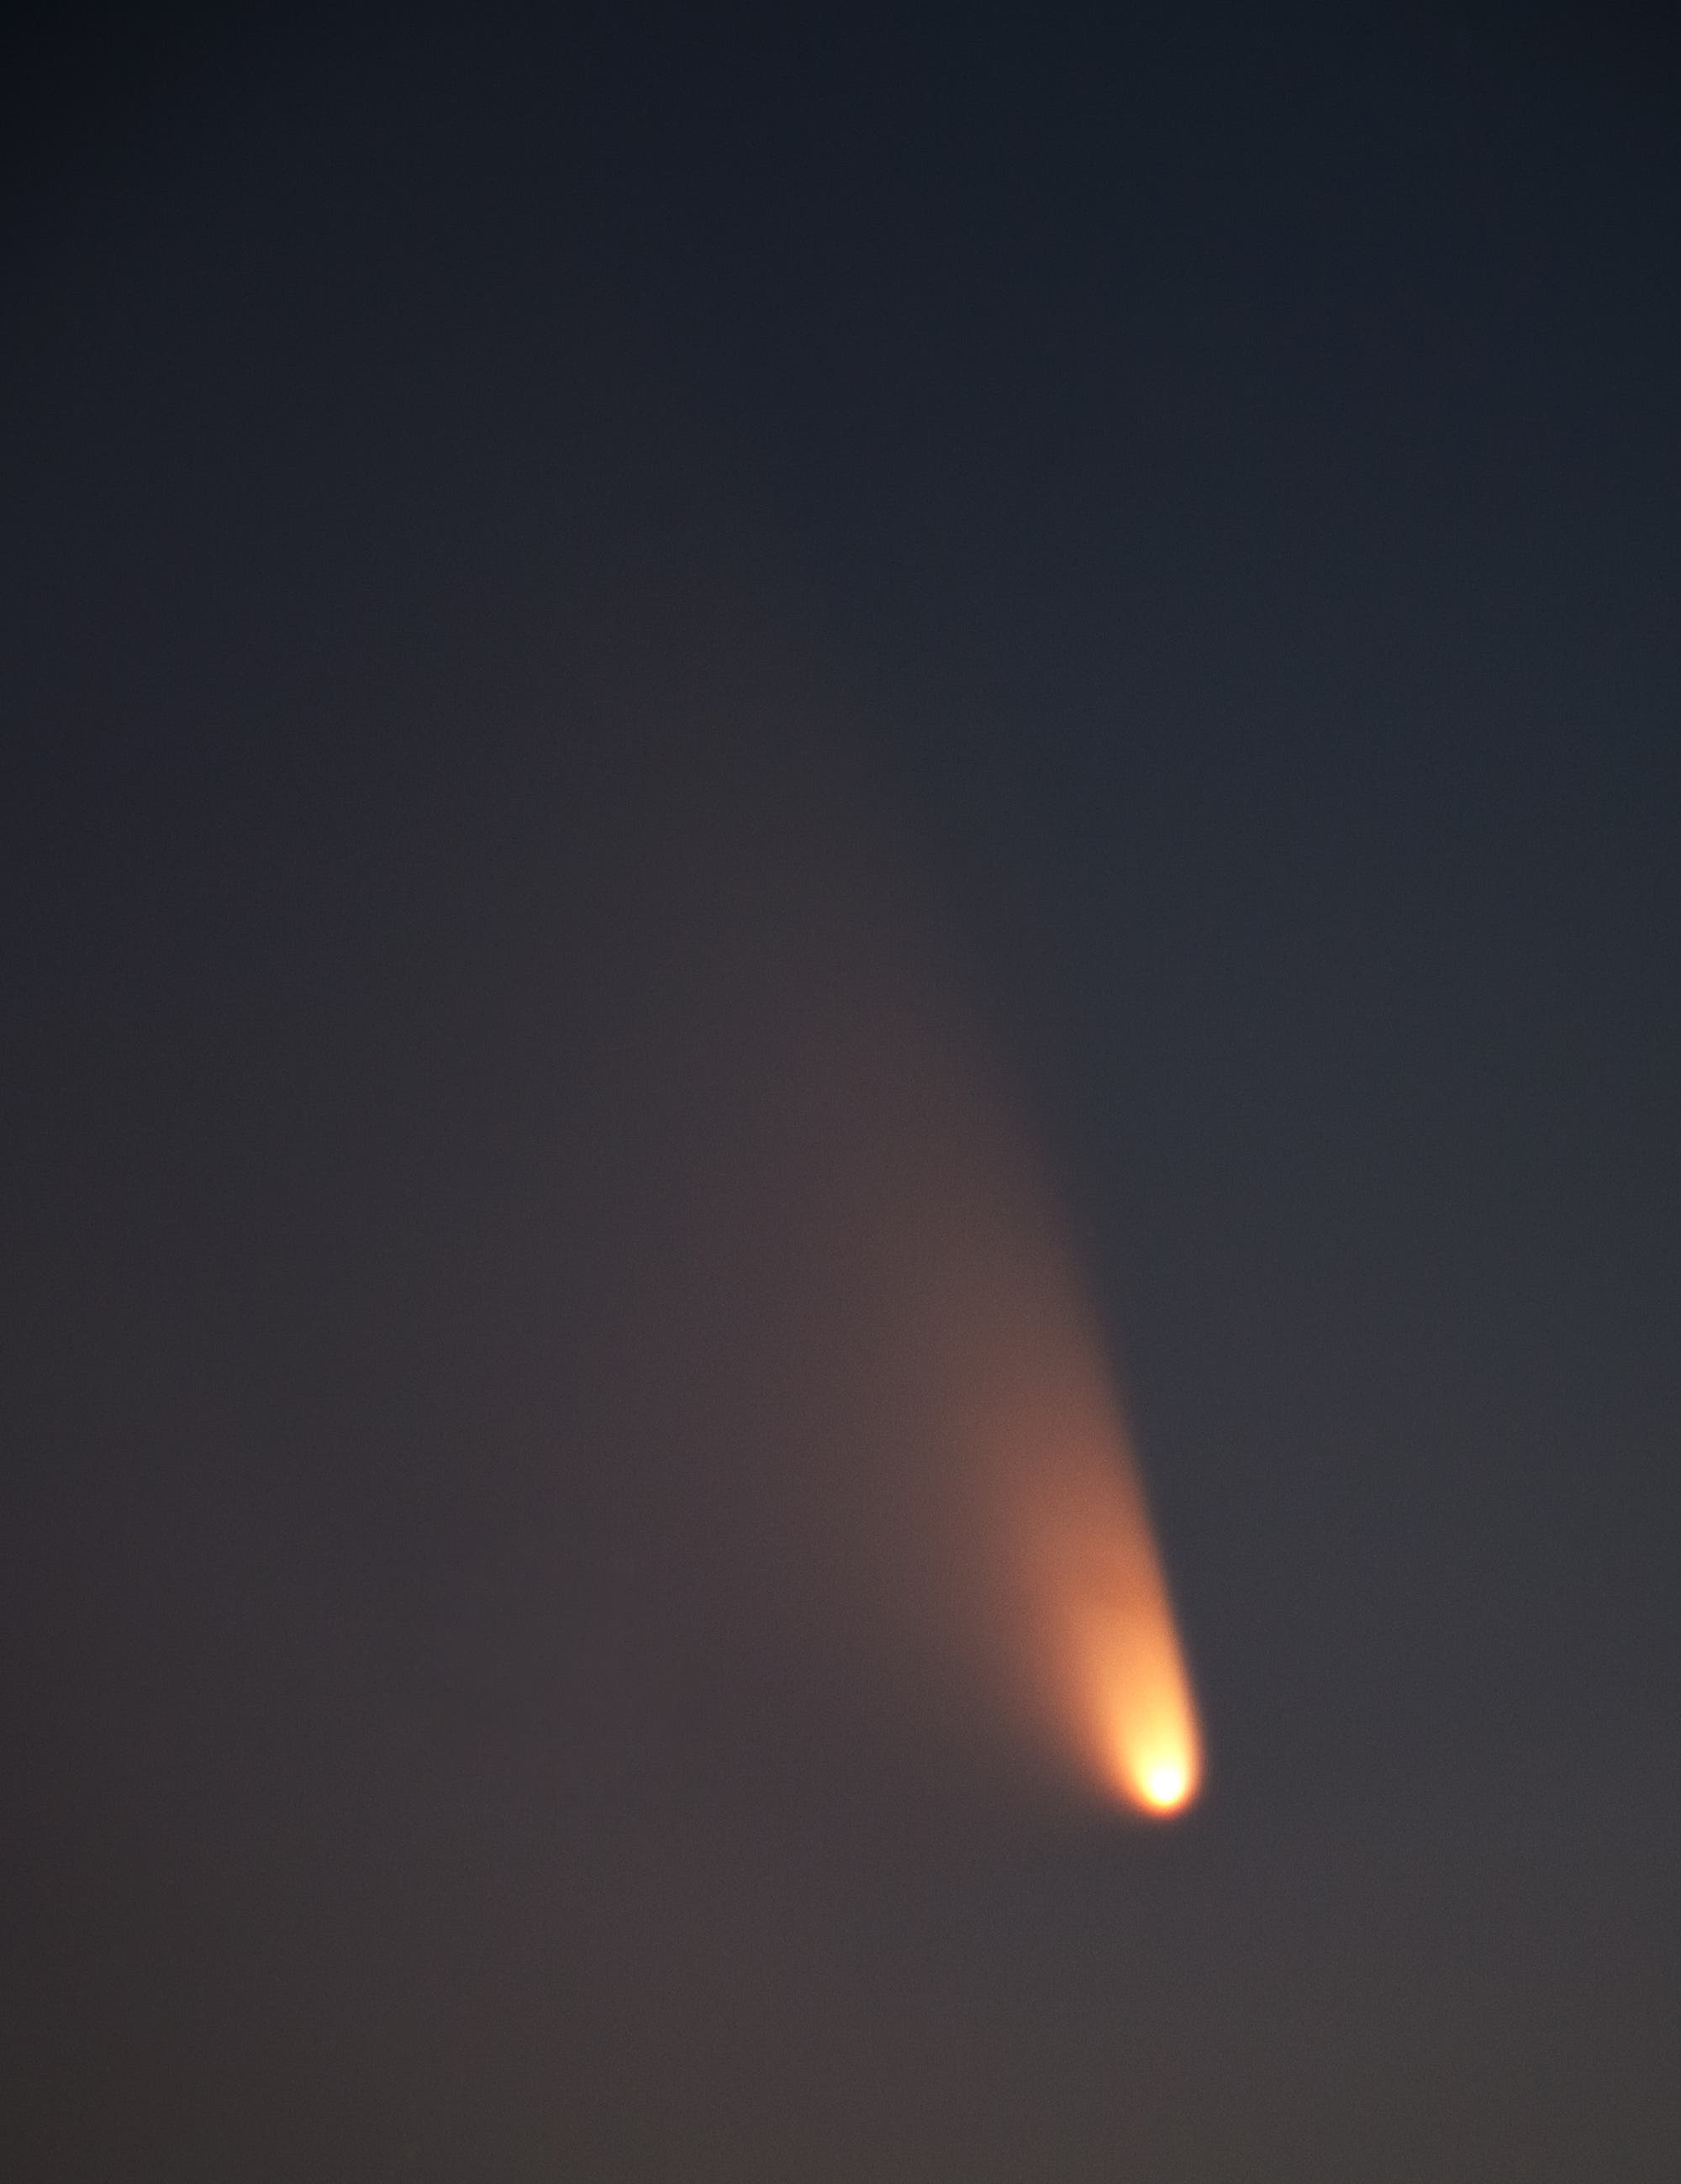 Komet C/2011 L4 PANSTARRS am 15.03.2013